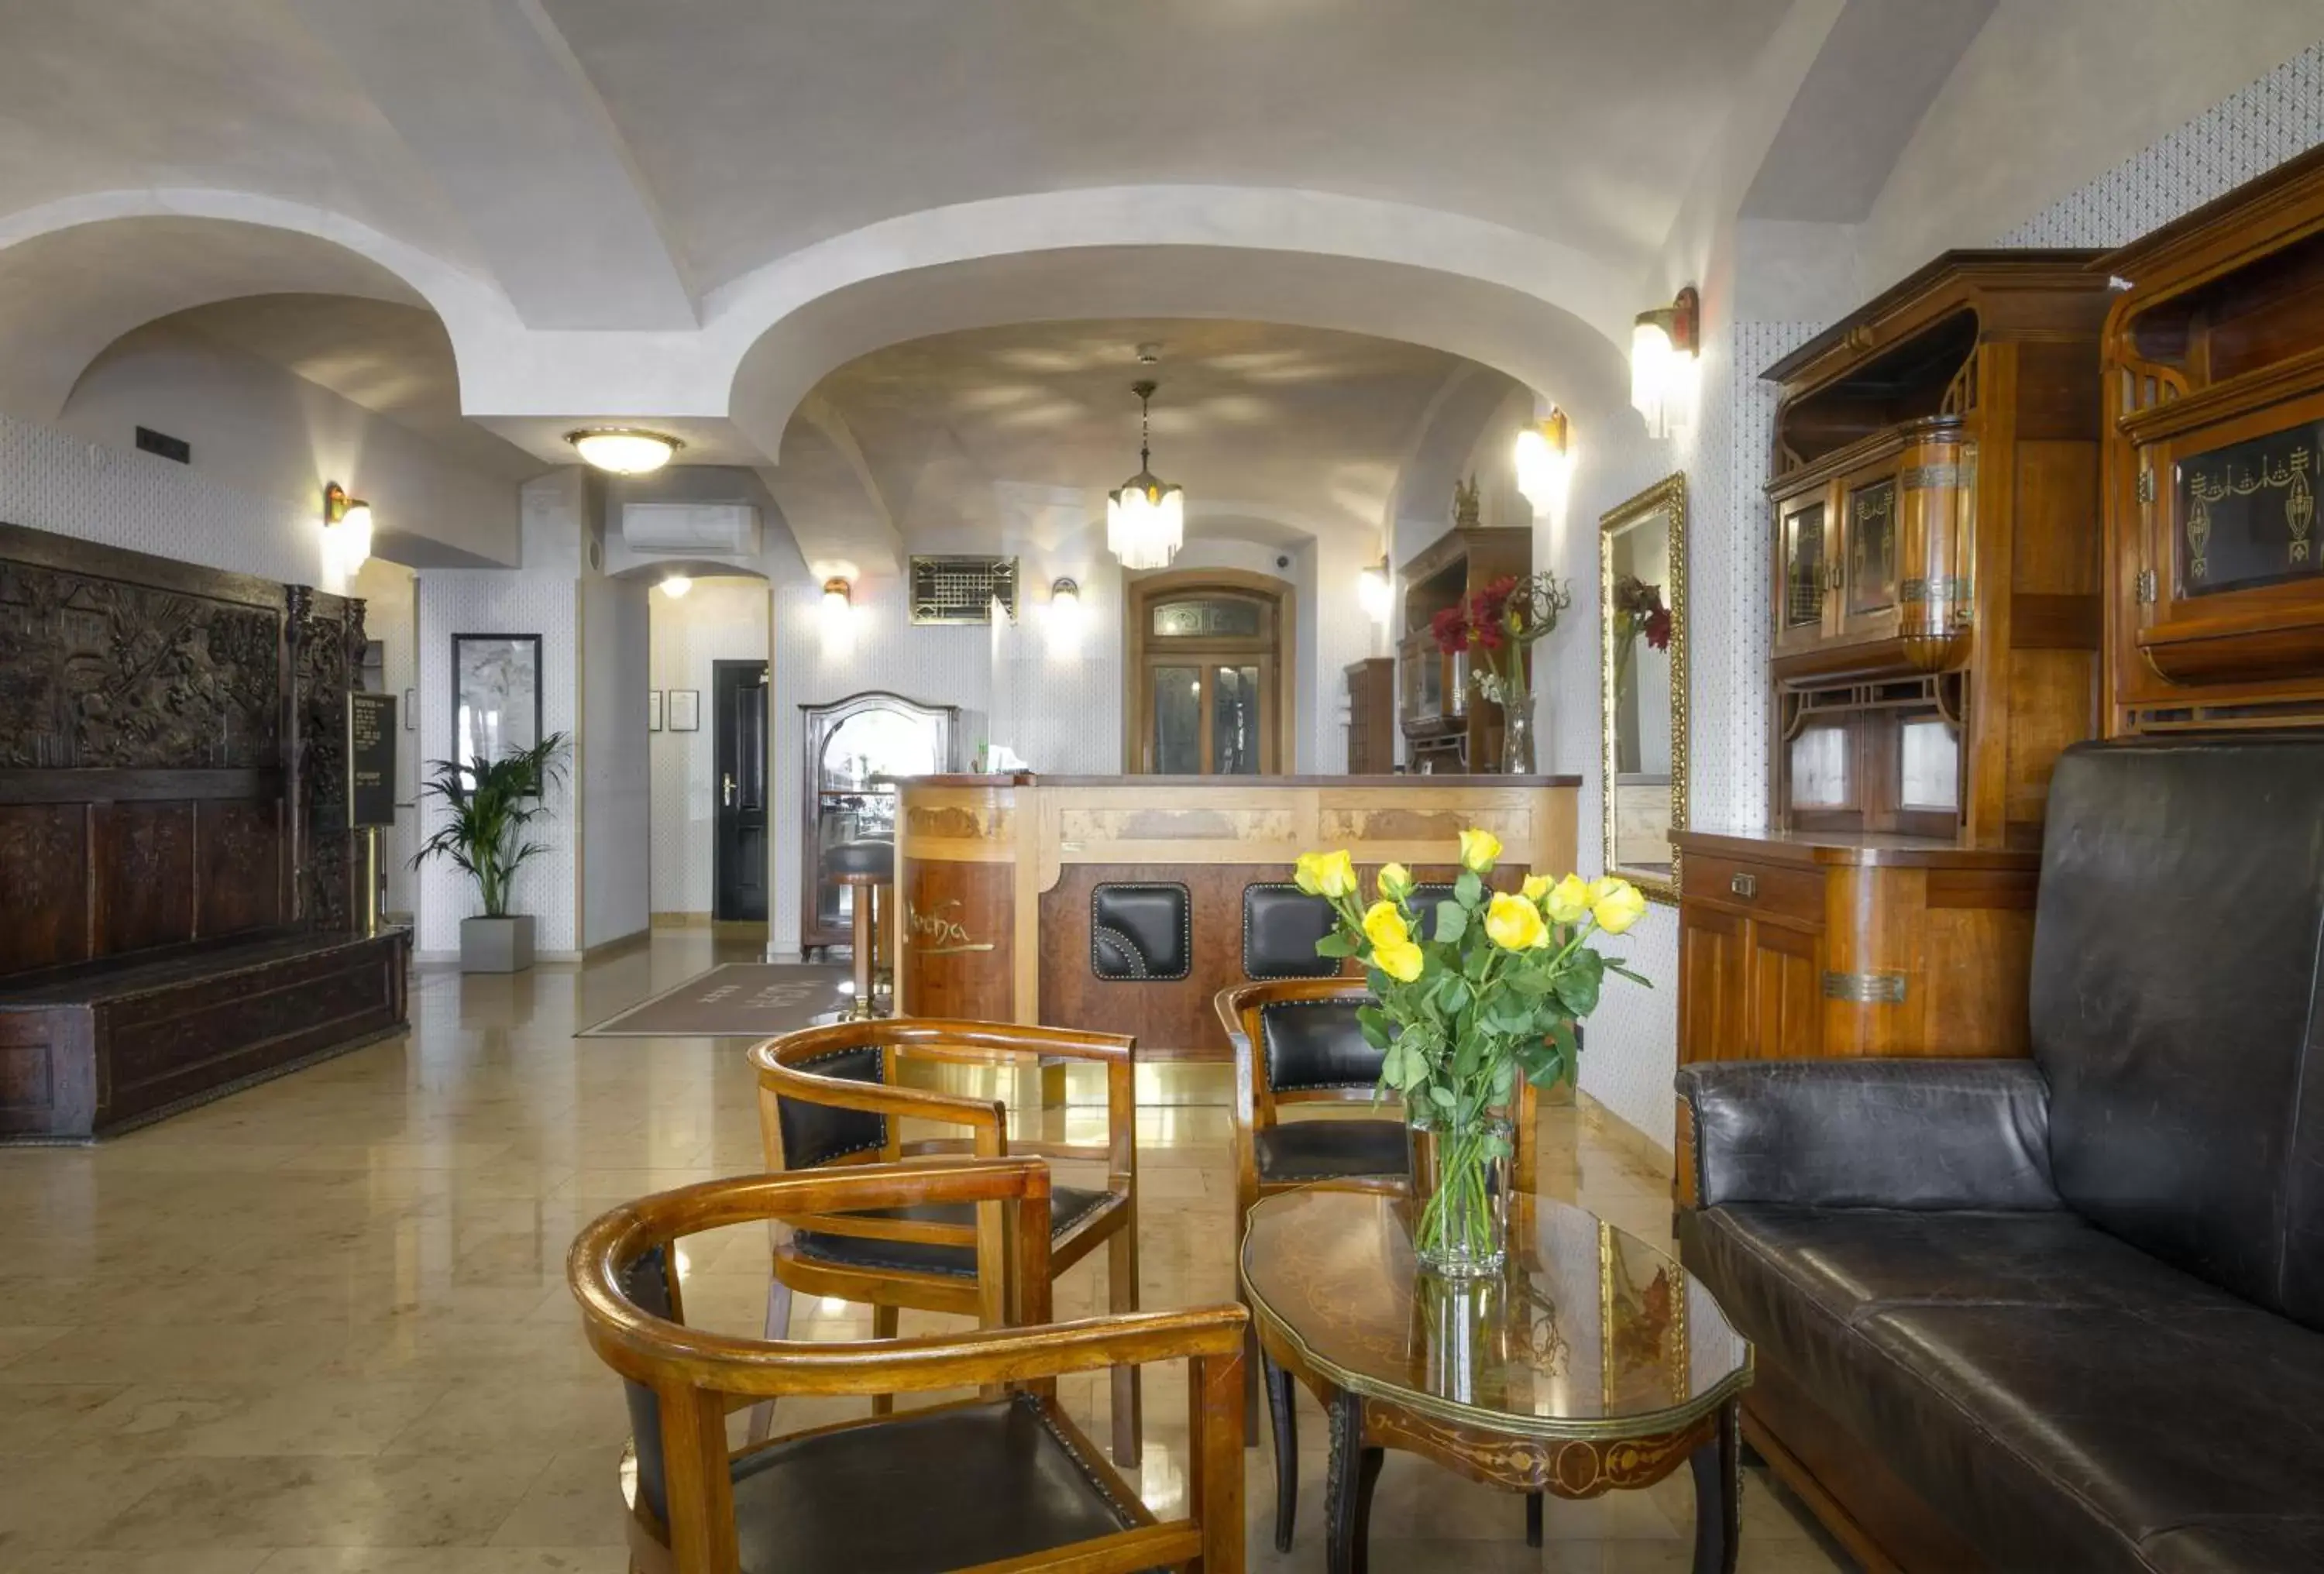 Lobby or reception, Lobby/Reception in Hotel Mucha